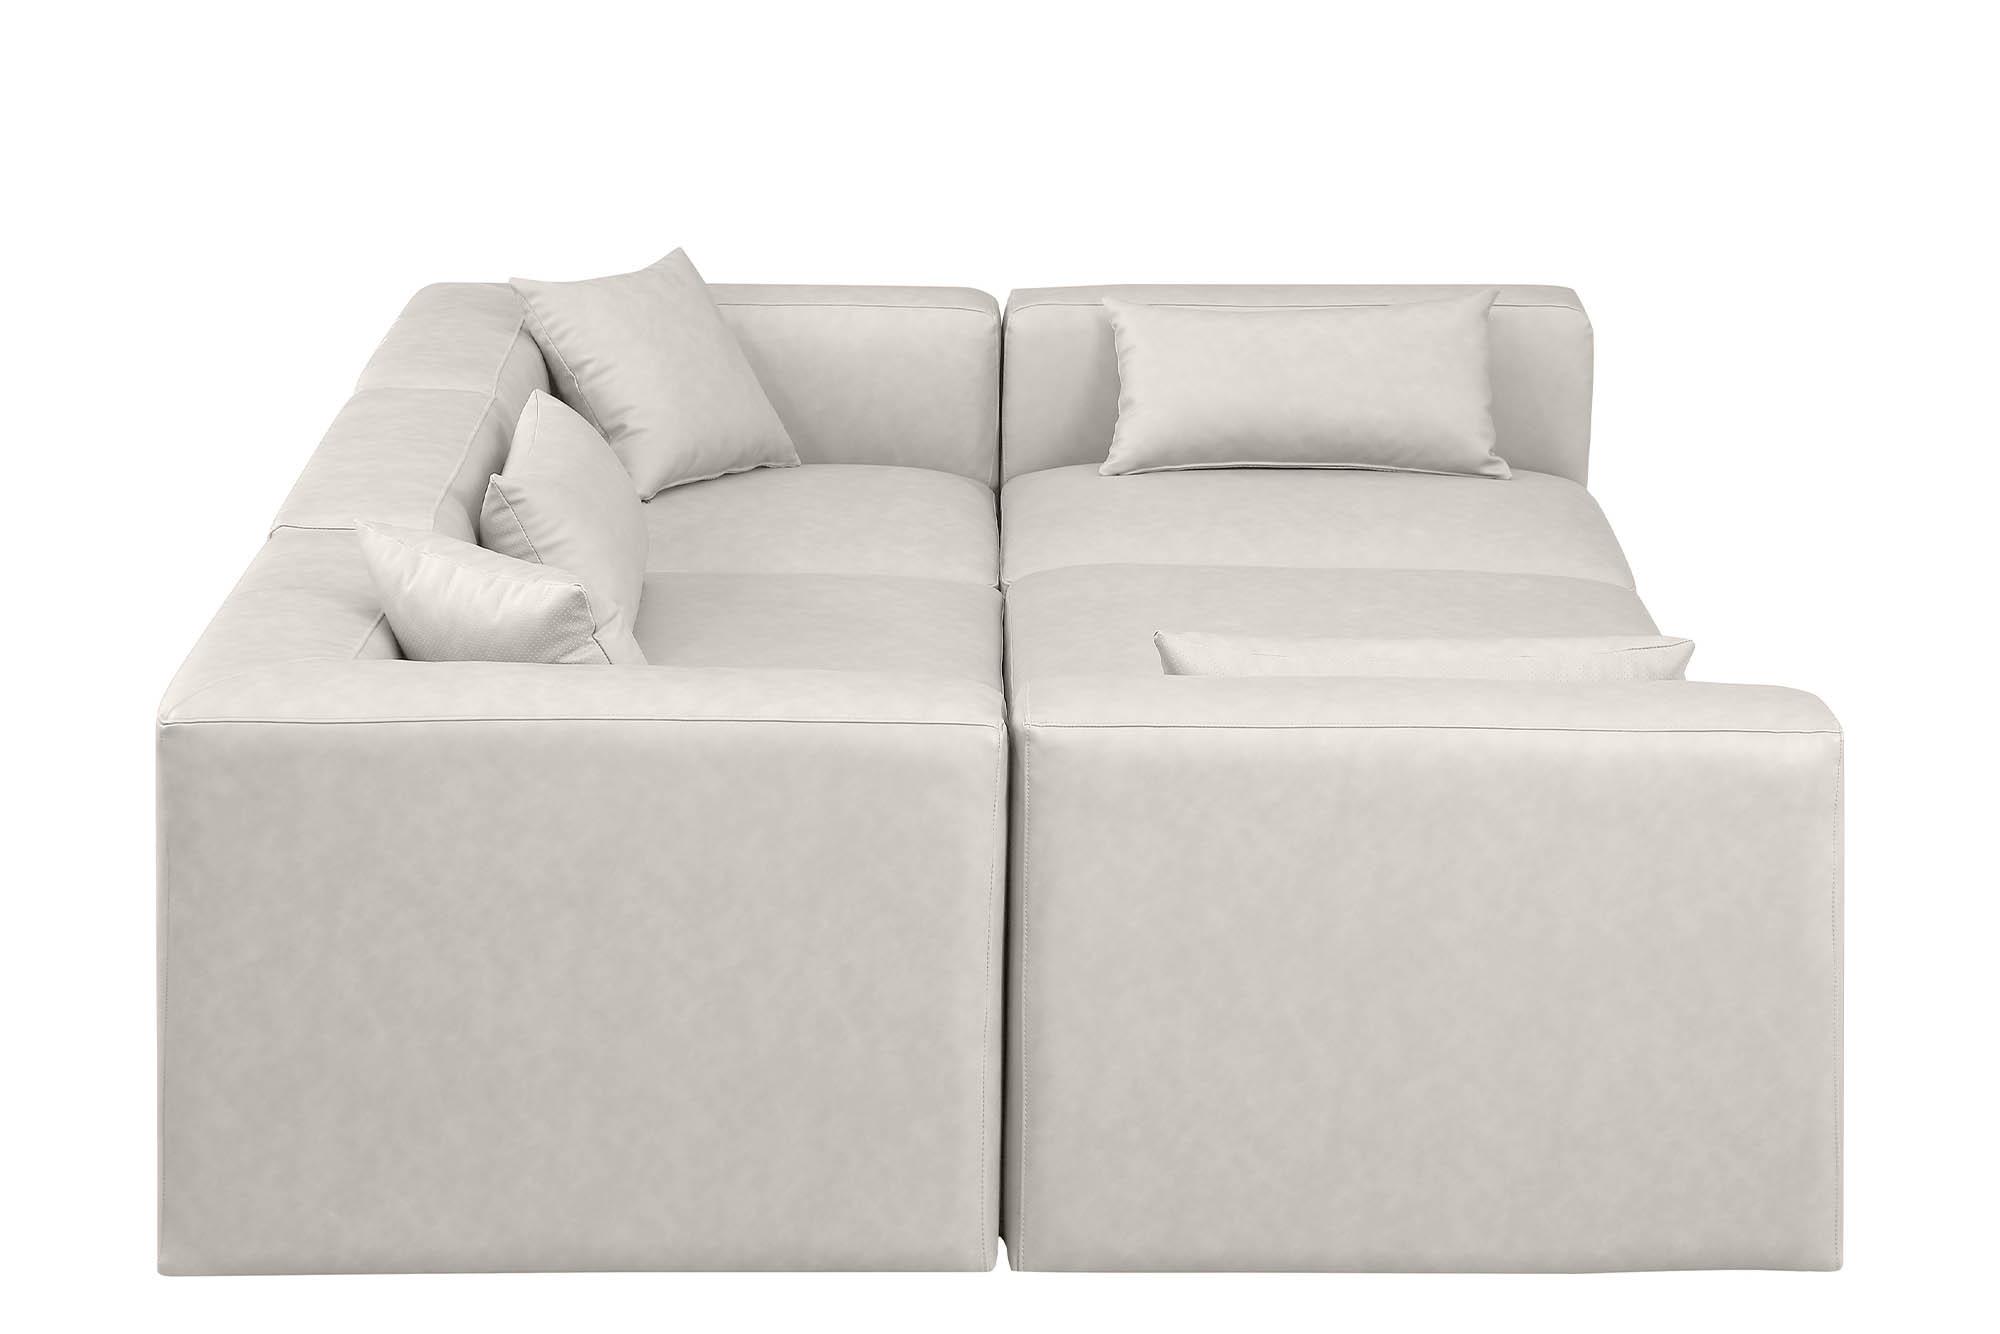 

    
Meridian Furniture CUBE 668Cream-Sec6C Modular Sectional Sofa Cream 668Cream-Sec6C
